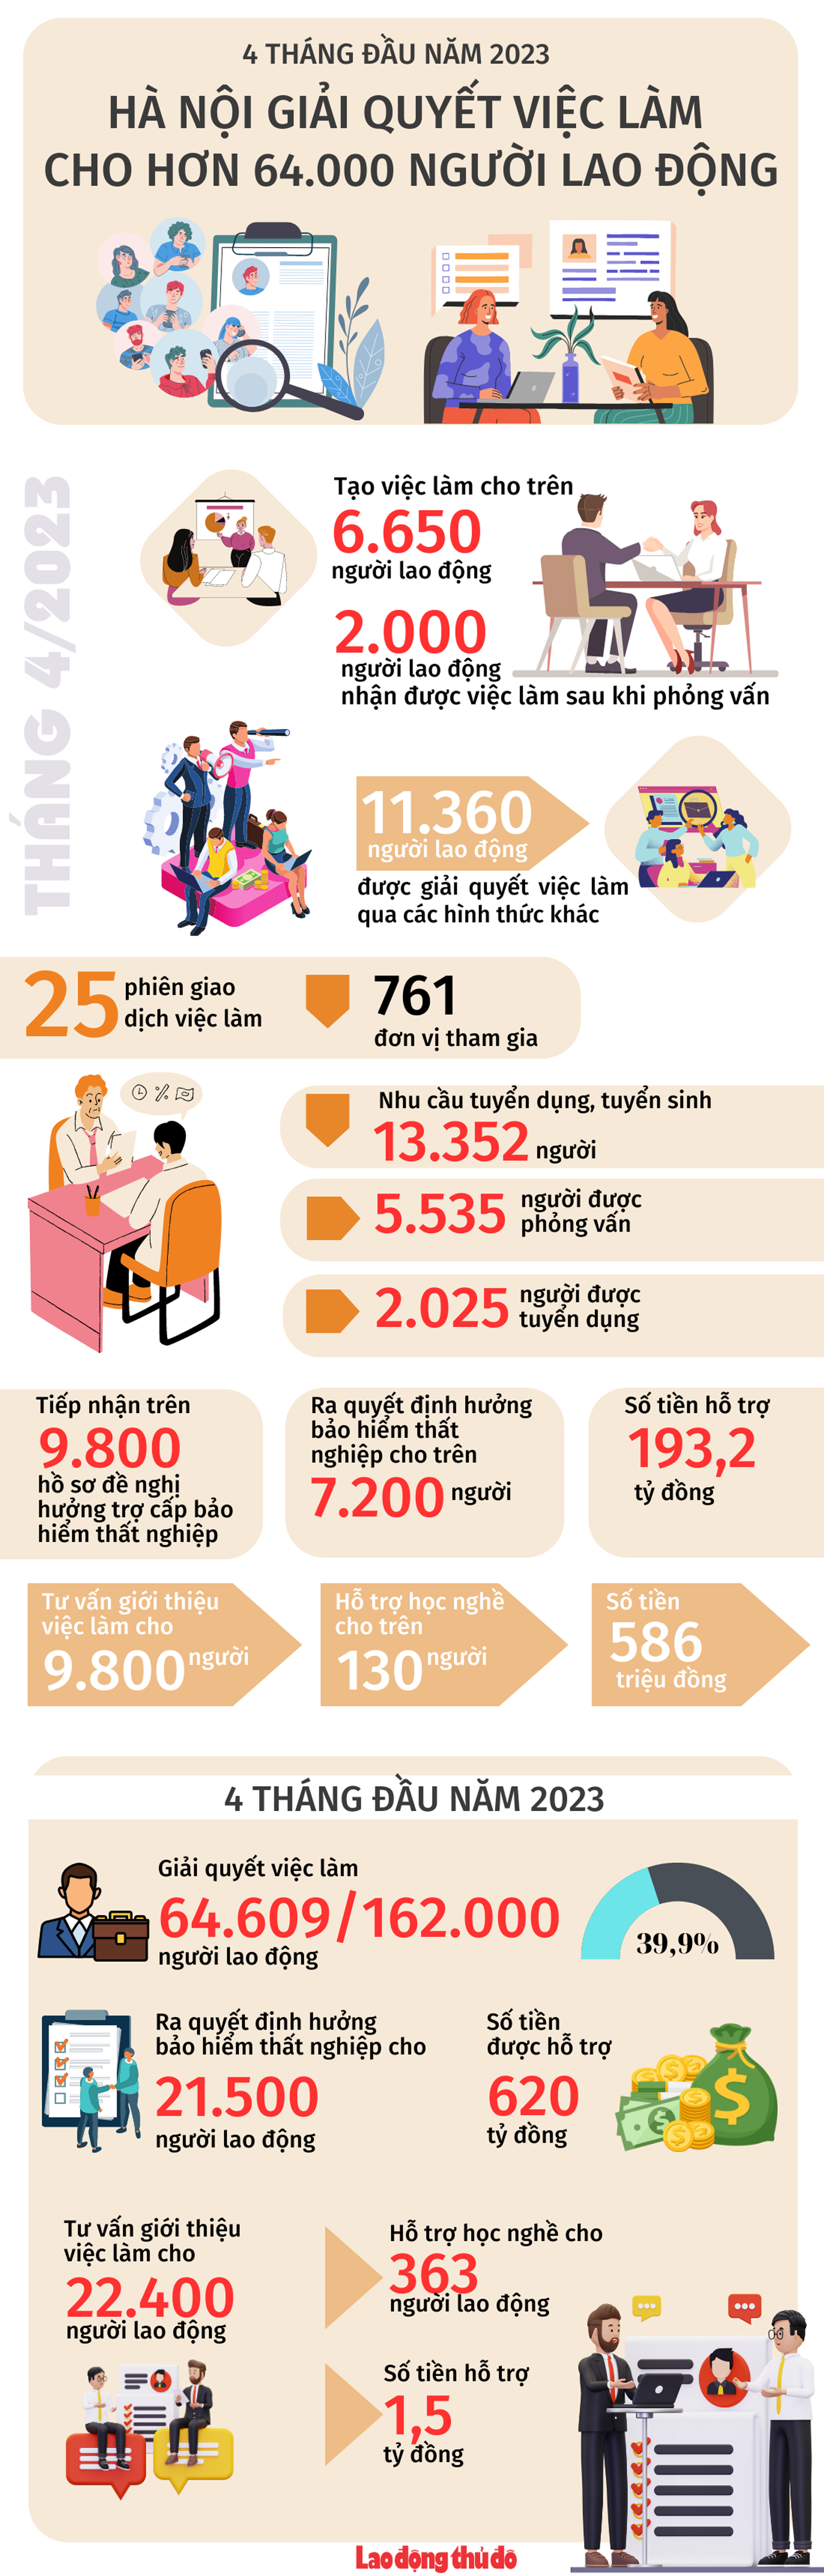 4 tháng đầu năm 2023, Hà Nội giải quyết việc làm cho hơn 64.000 người lao động